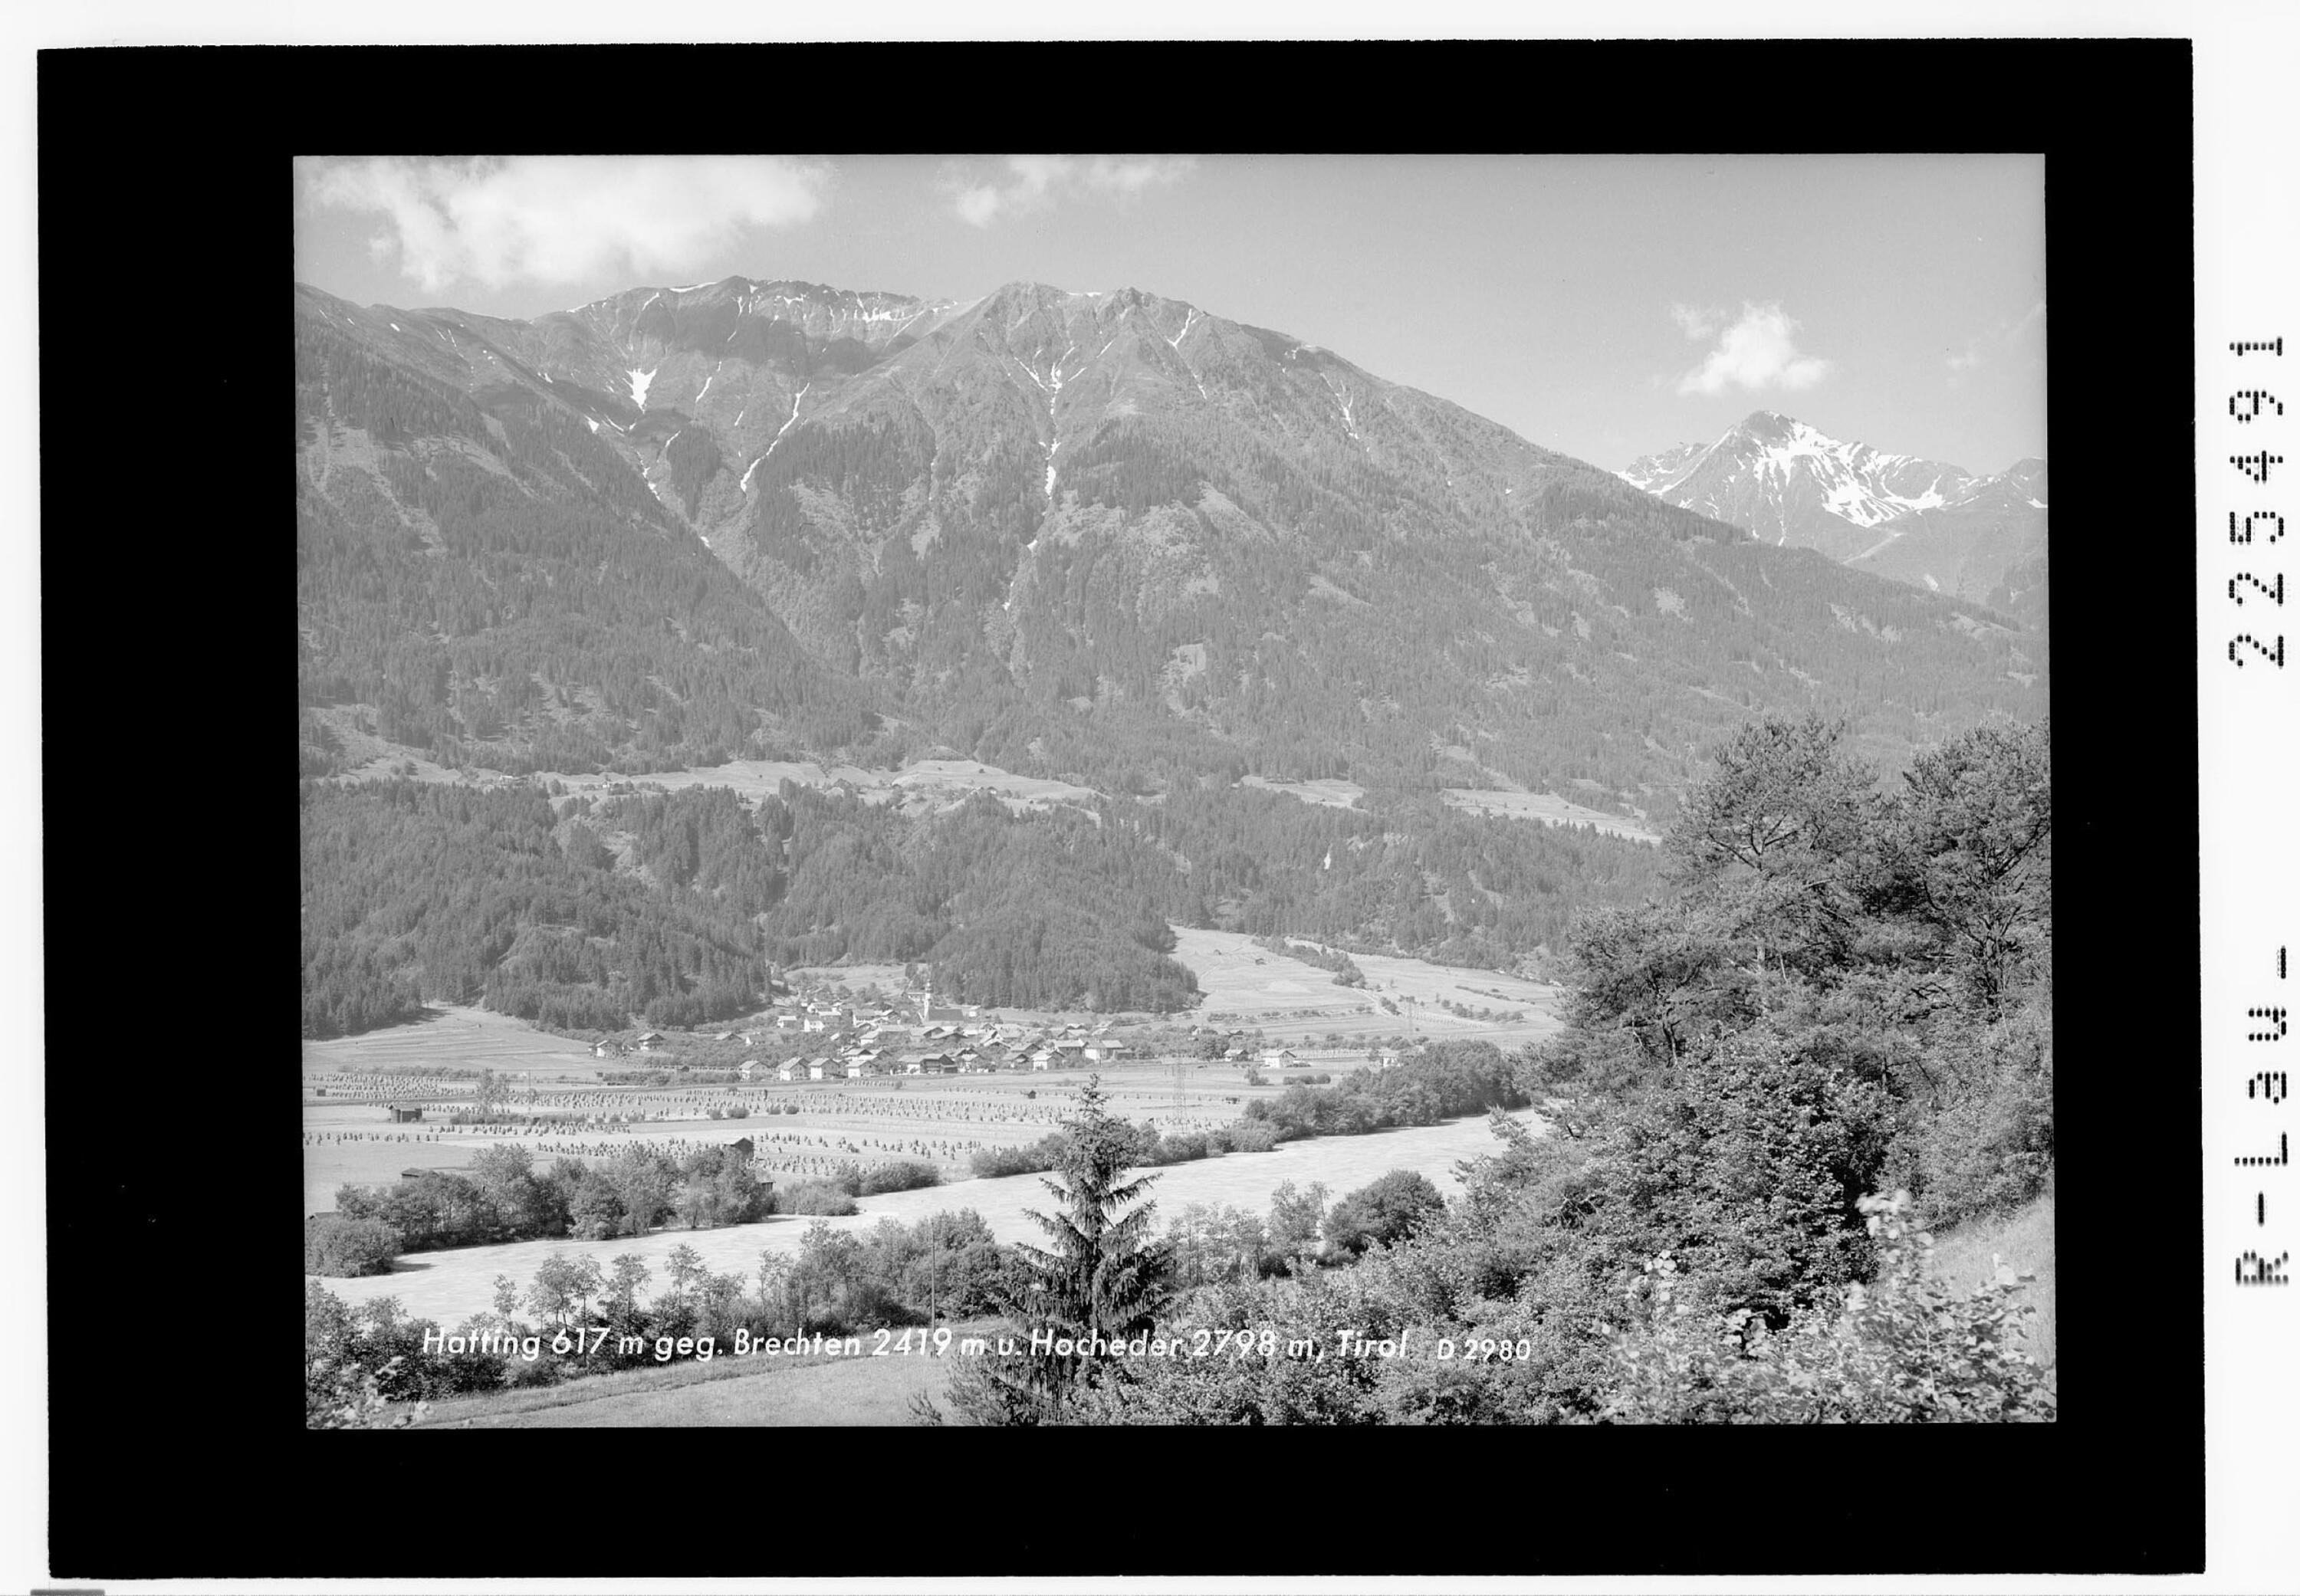 Hatting 617 m gegen Brechten 2419 und Hocheder 2798 m / Tirol></div>


    <hr>
    <div class=